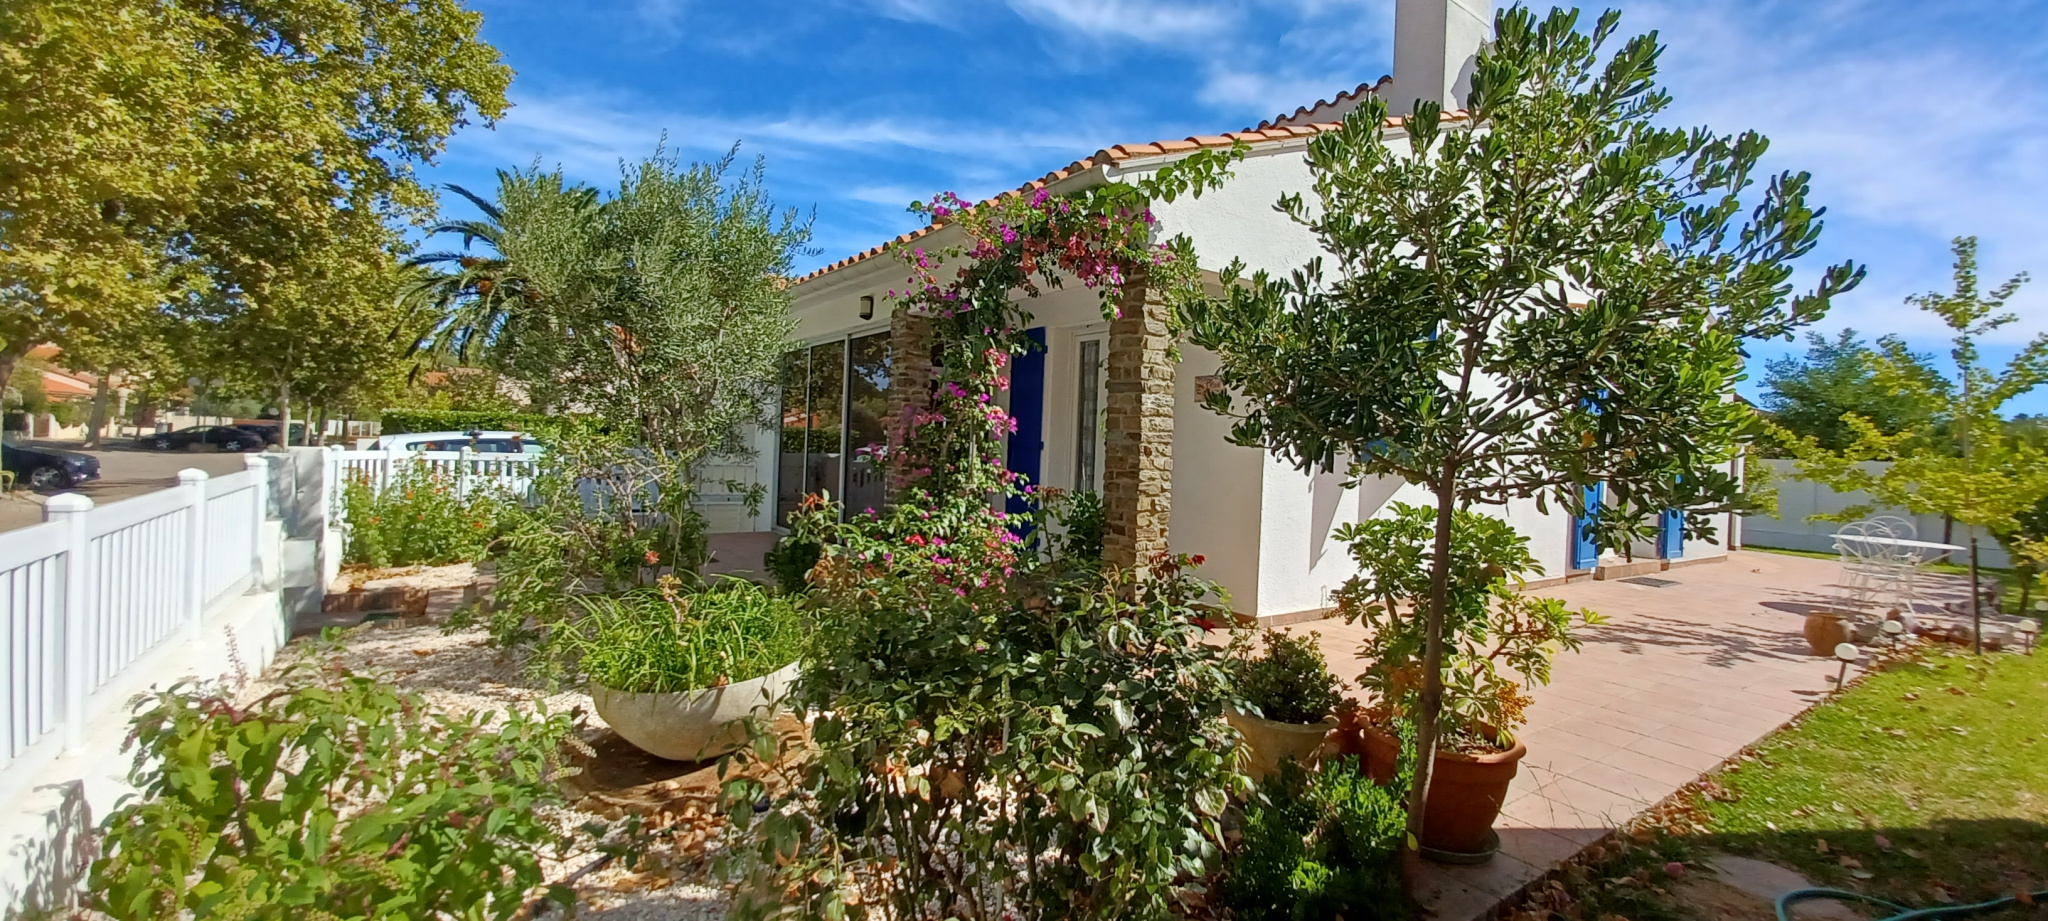 Villa F3 with garden in Argeles sur mer